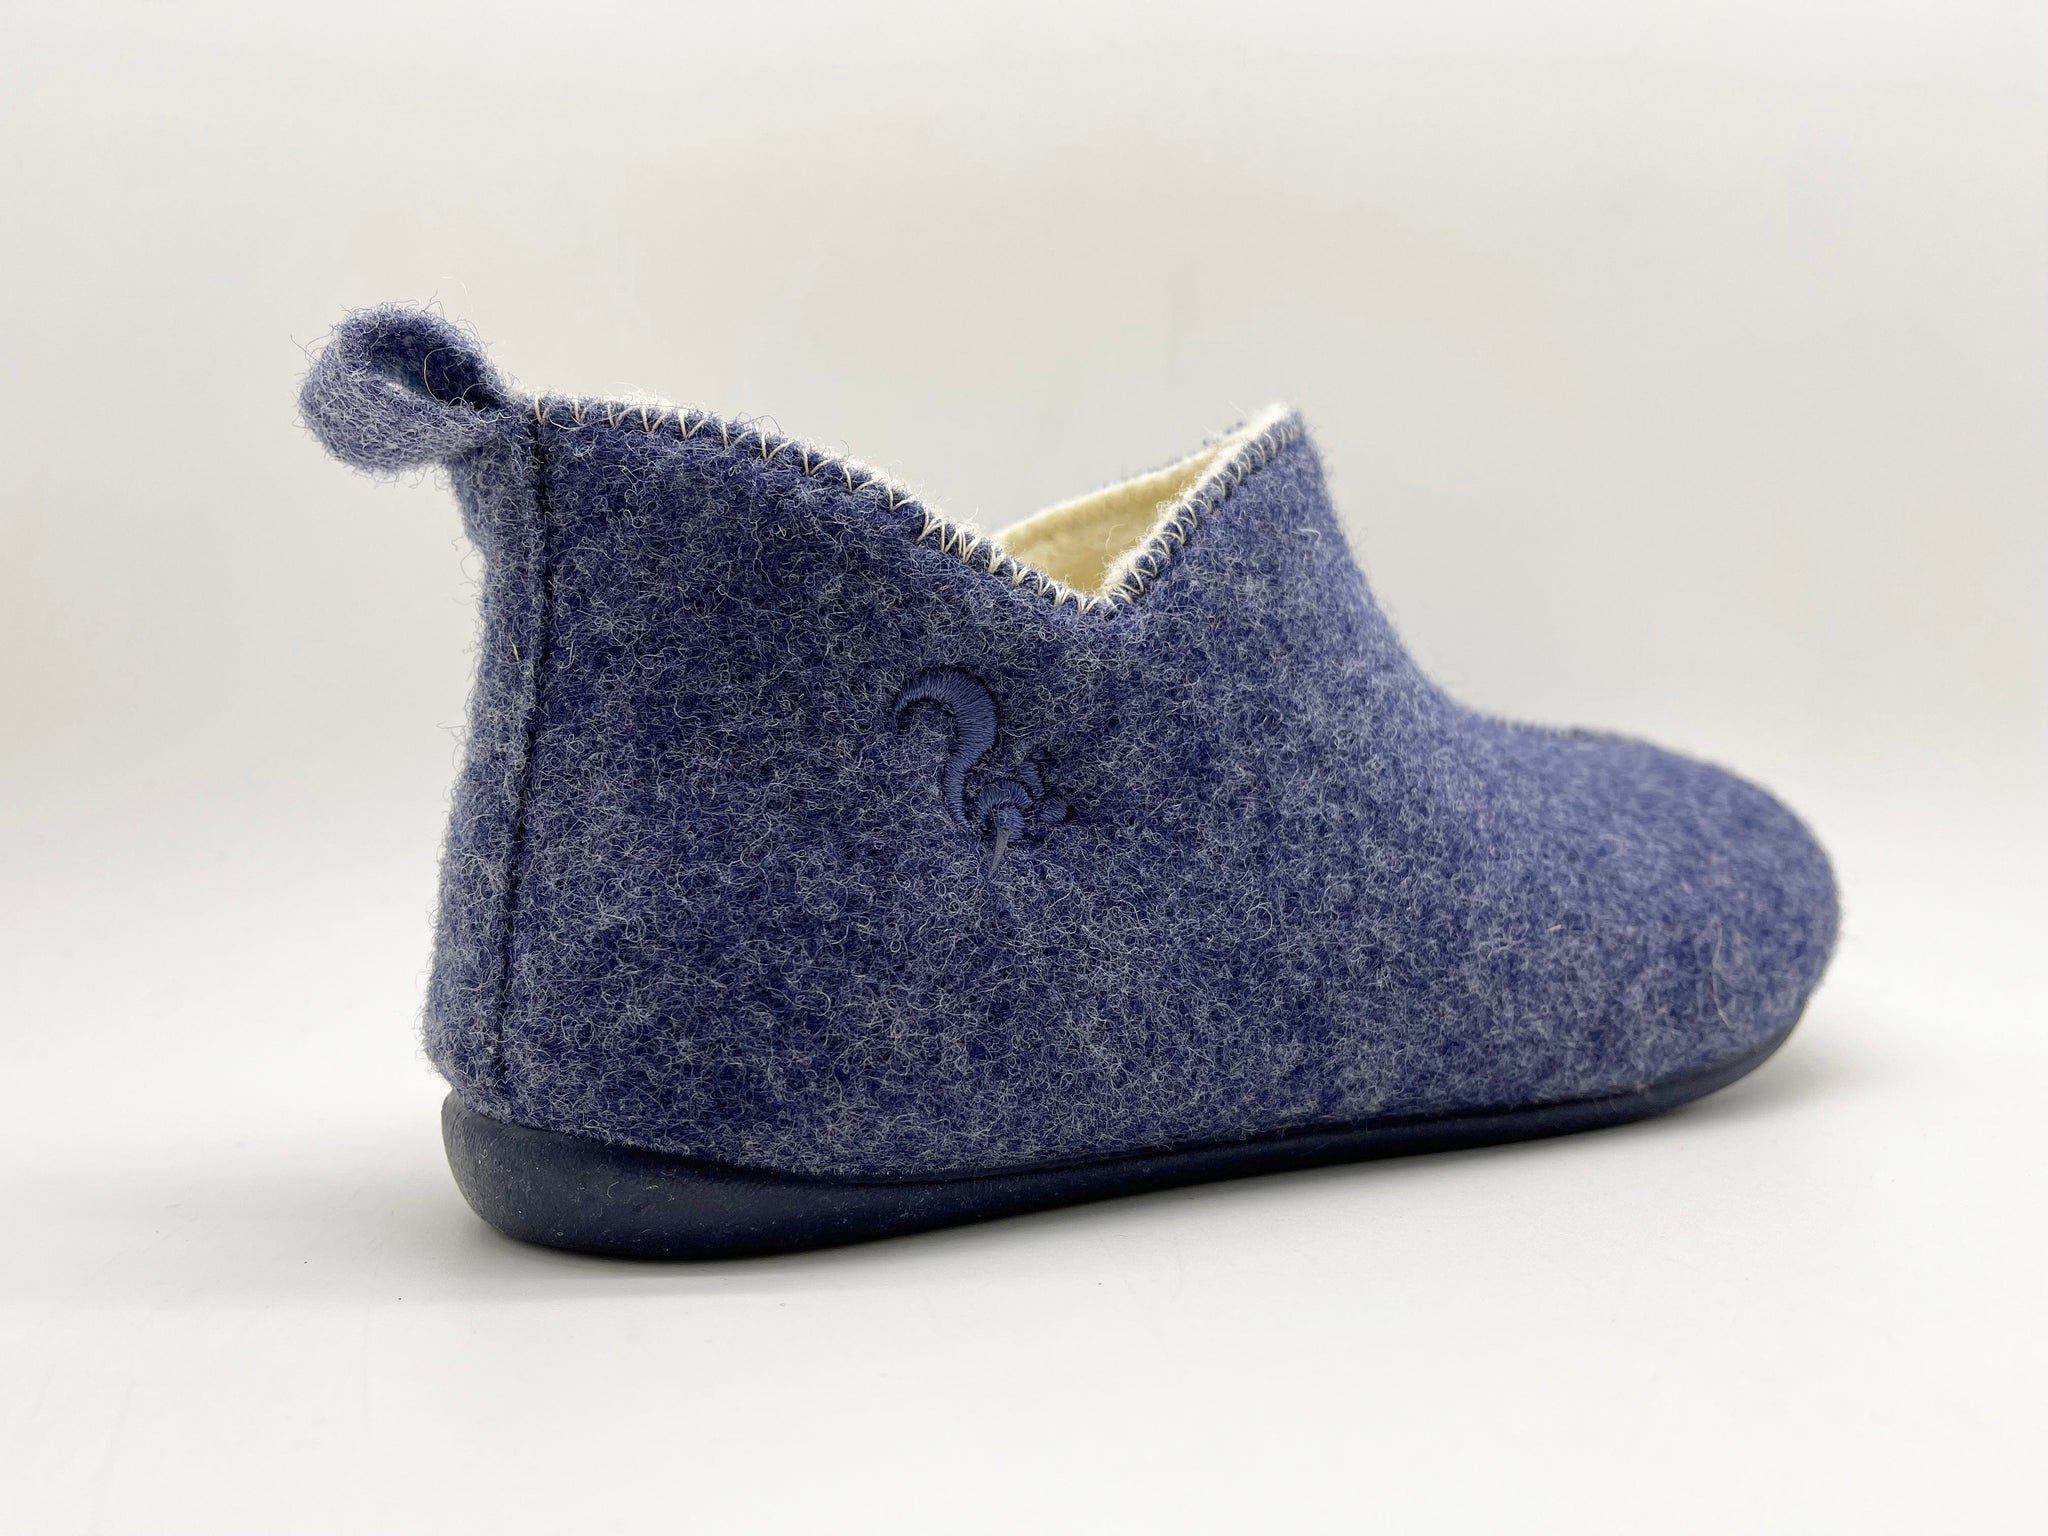 NAT 2 calzado thies 1856 ® Slipper Boots azul marino oscuro con Eco Wool (W) moda sostenible moda ética